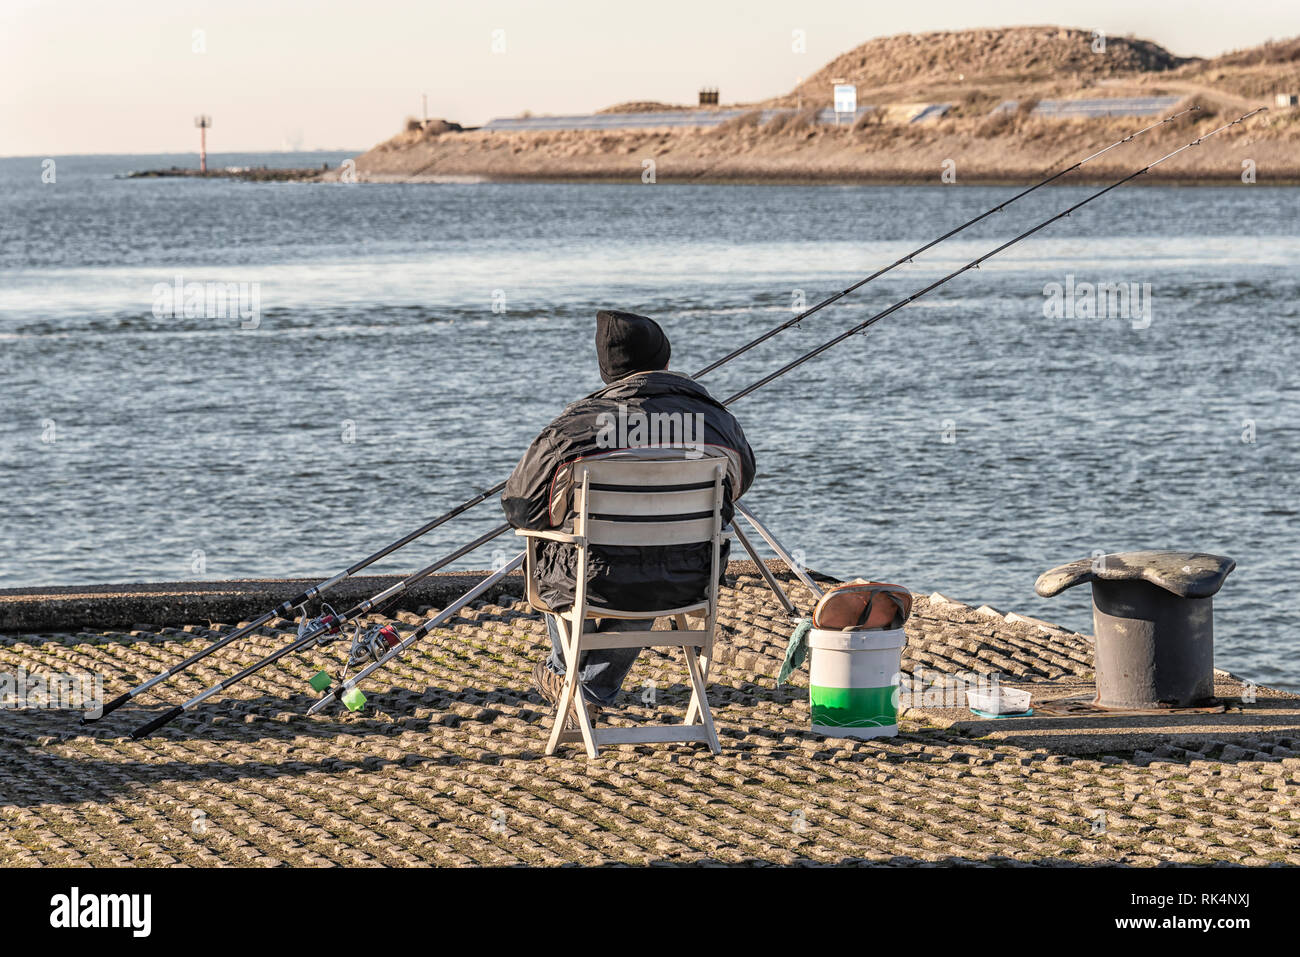 El pescador se encuentra en el lado del canal en una silla de